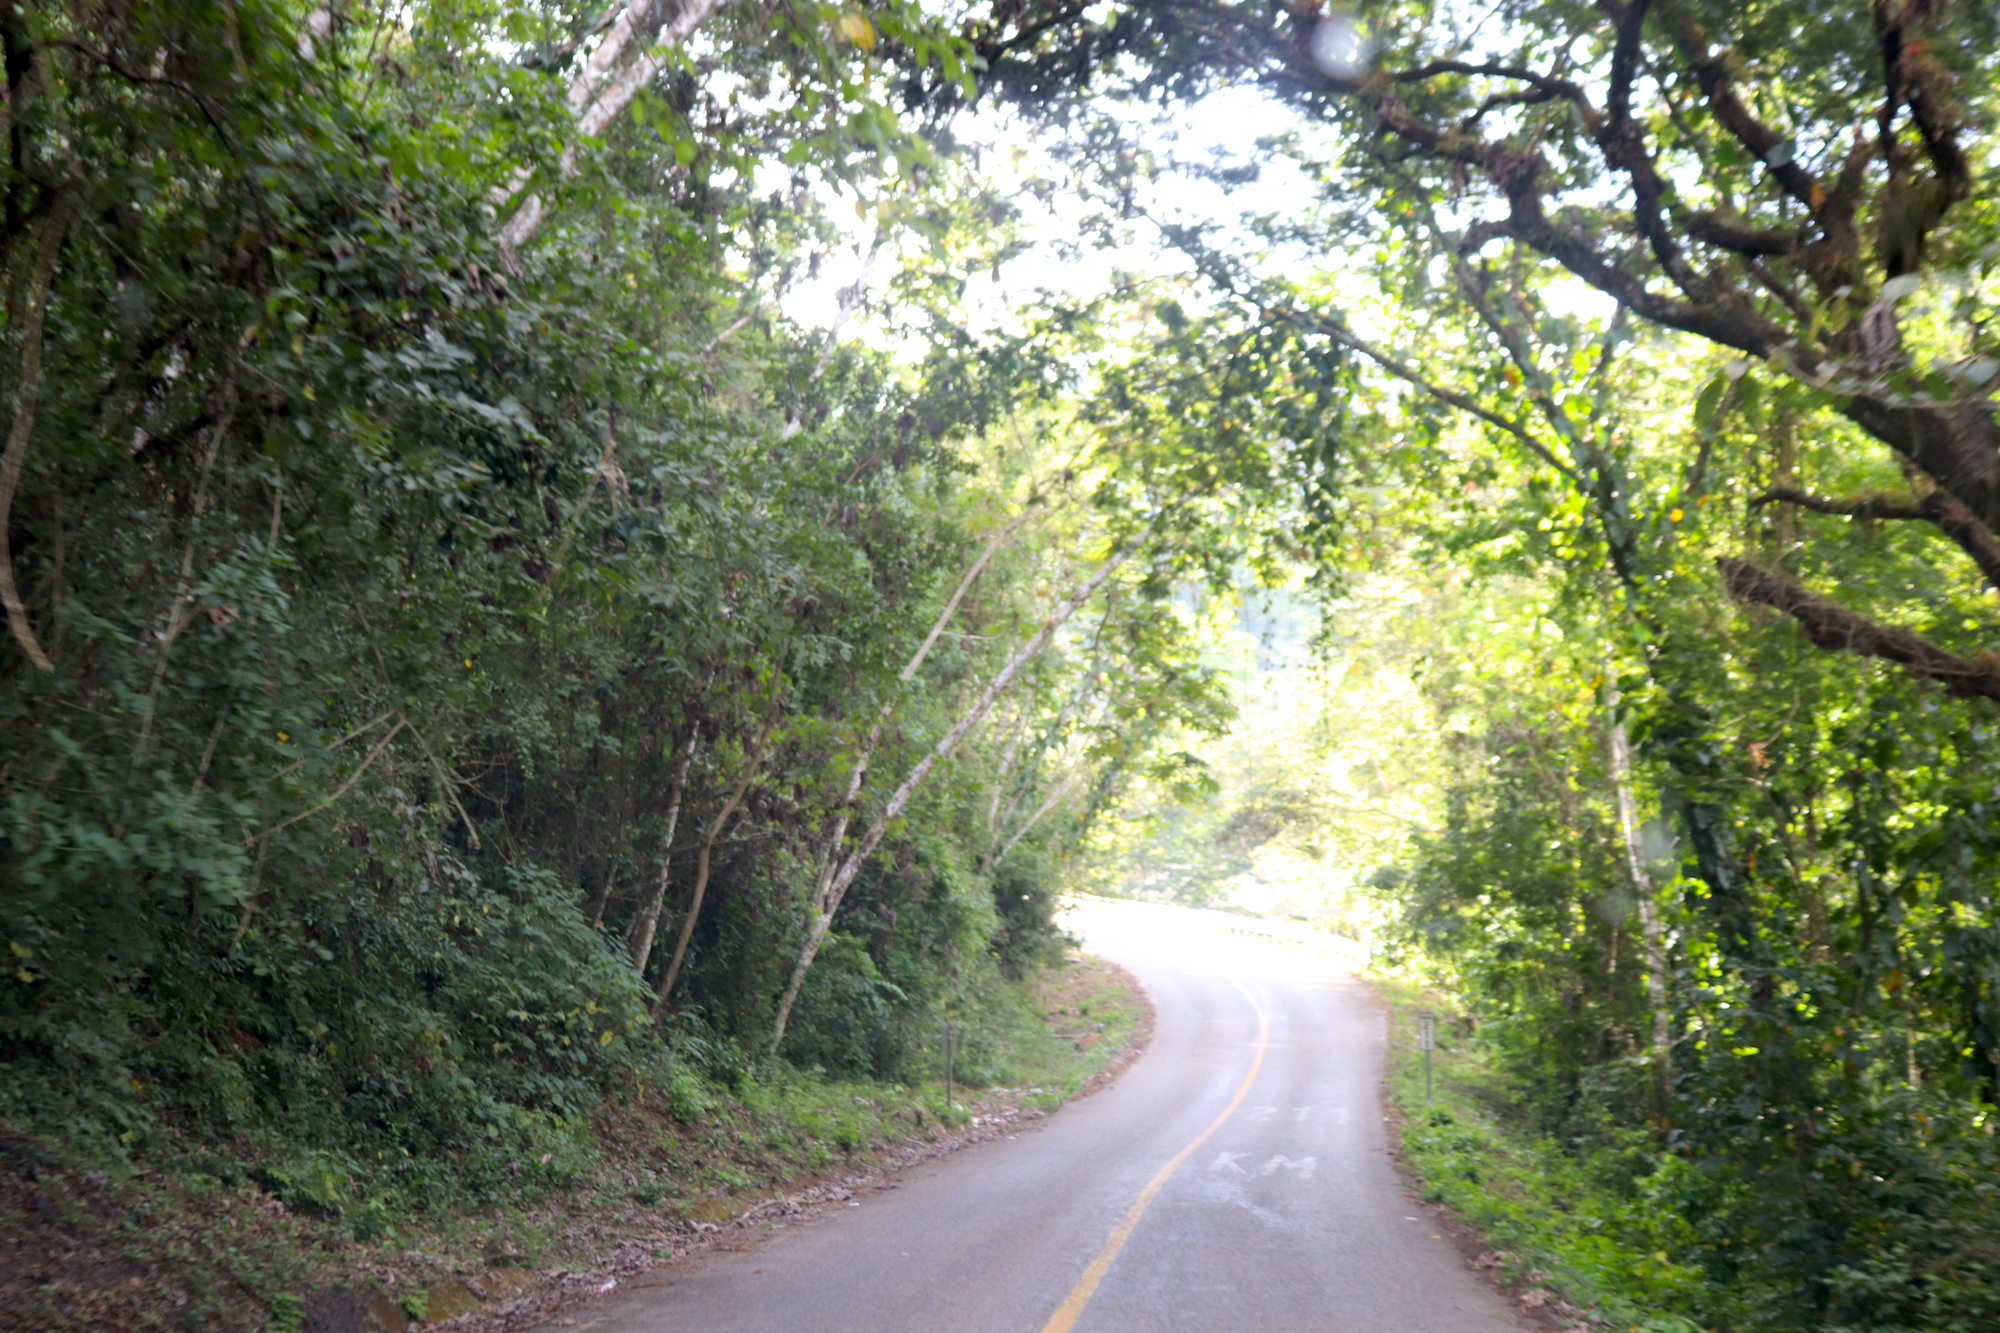 Road through Sierra Sur mountains, Oaxaca